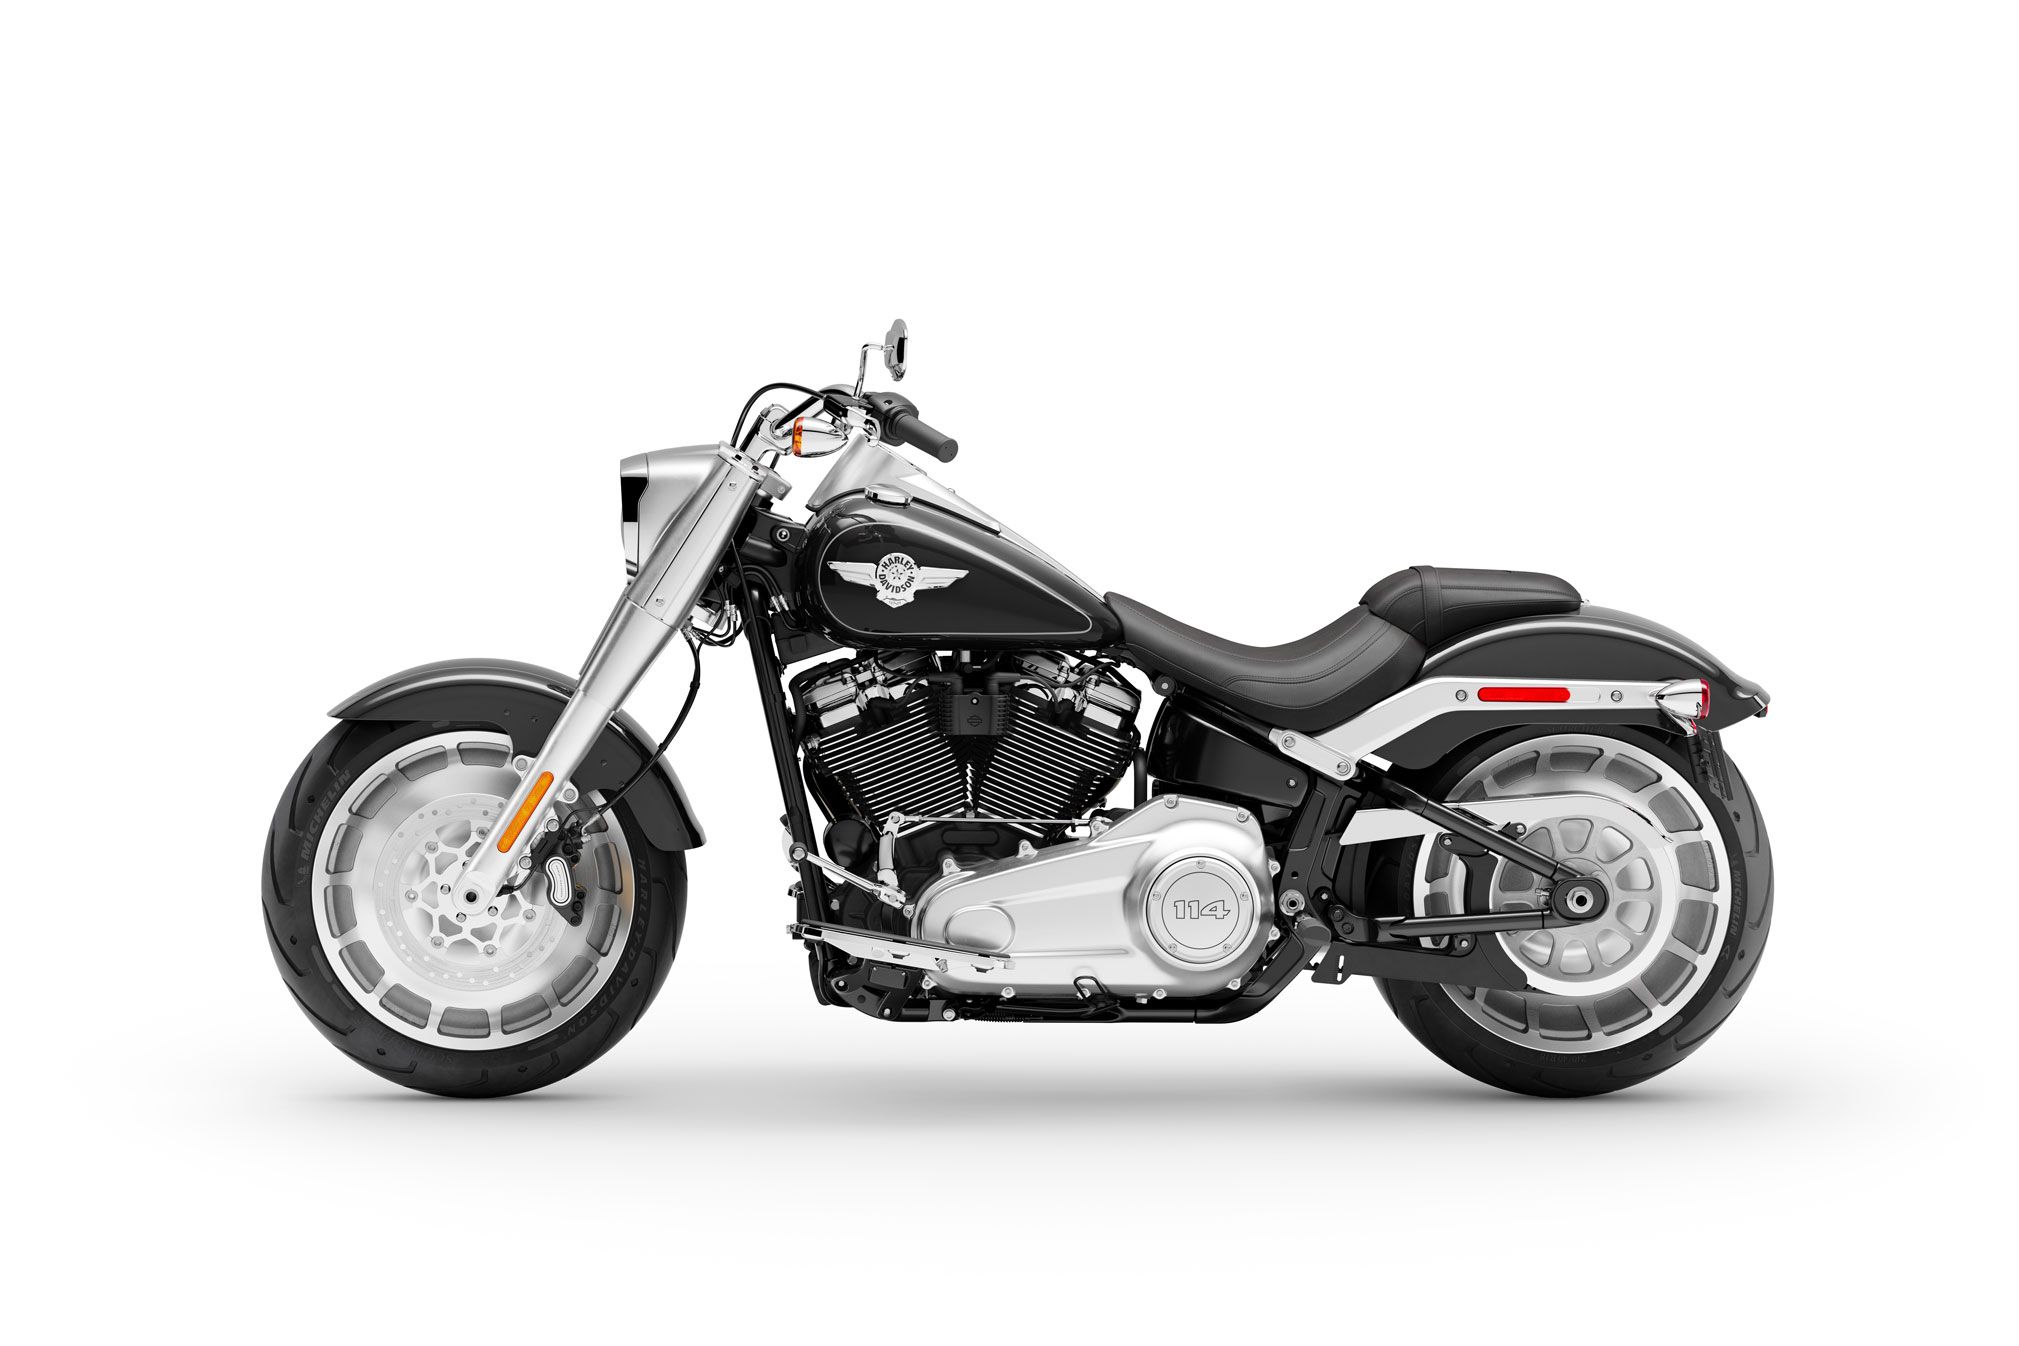 Harley Davidson Fat Boy 2019 Price Off 68 Medpharmres Com